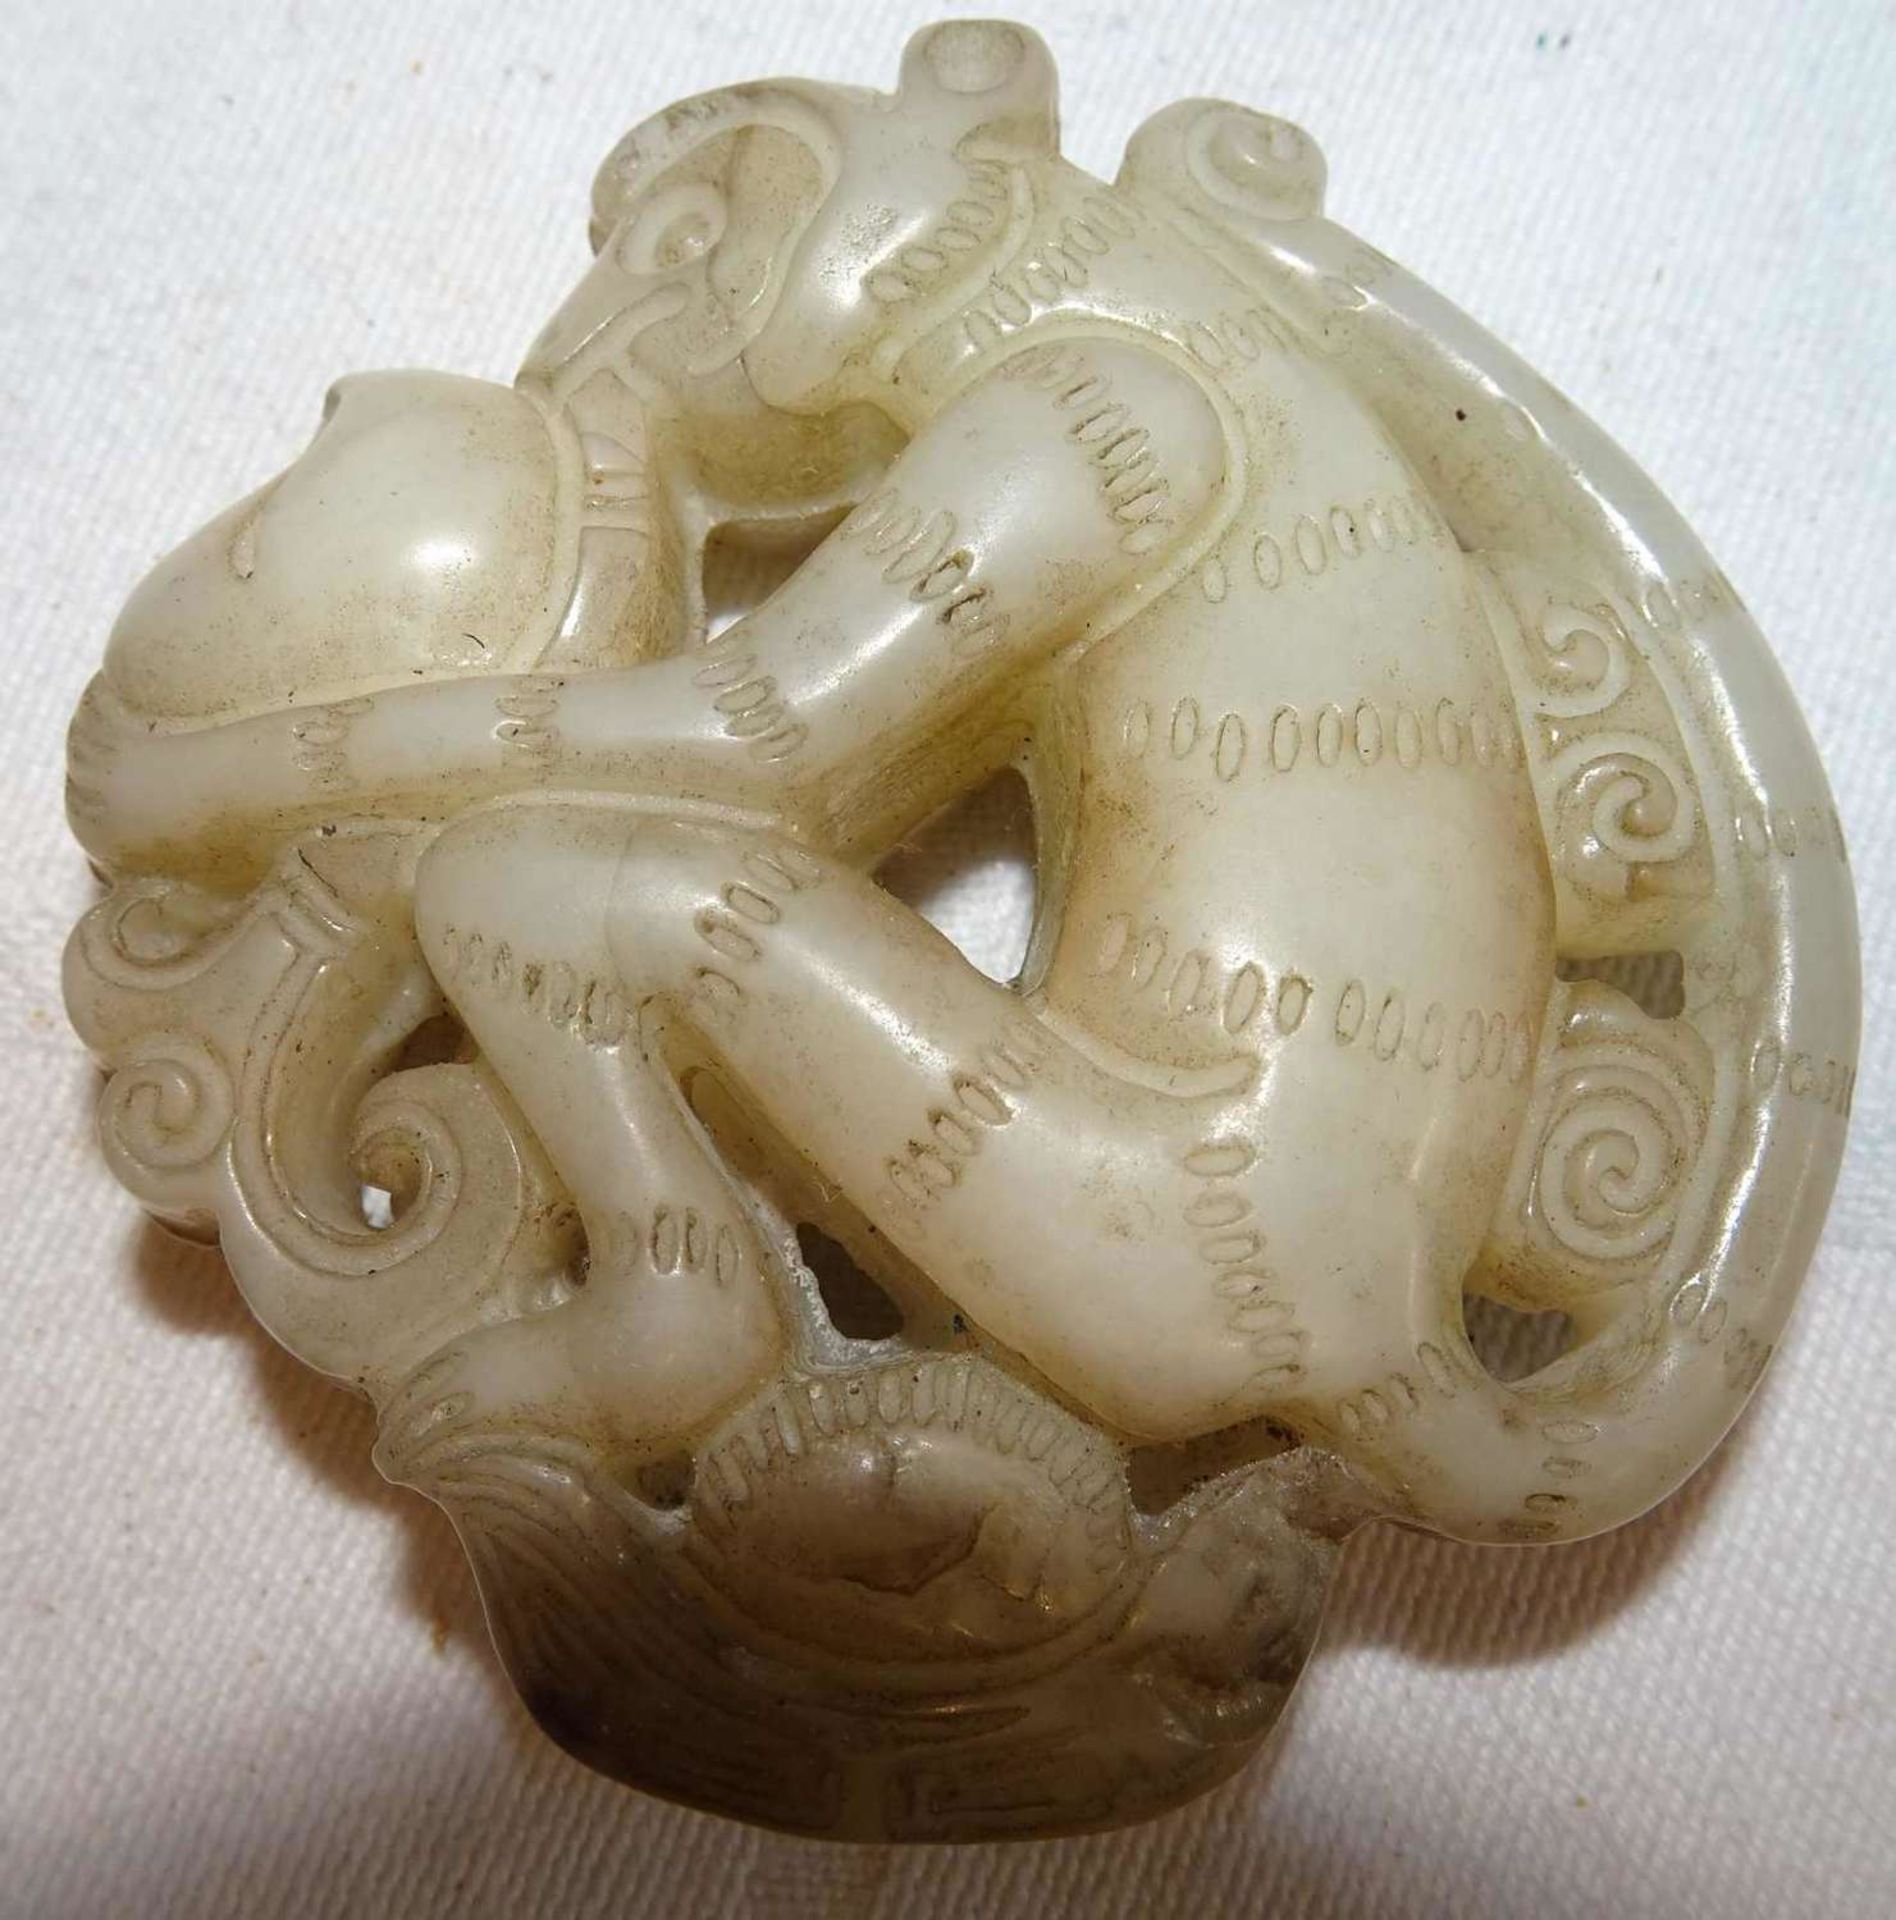 Altes Jade Amulett "Affe". Sehr altes Stück aus einer Sammlung. Höhe ca. 6 cm, Breite ca. 5,6 cmO - Image 2 of 3